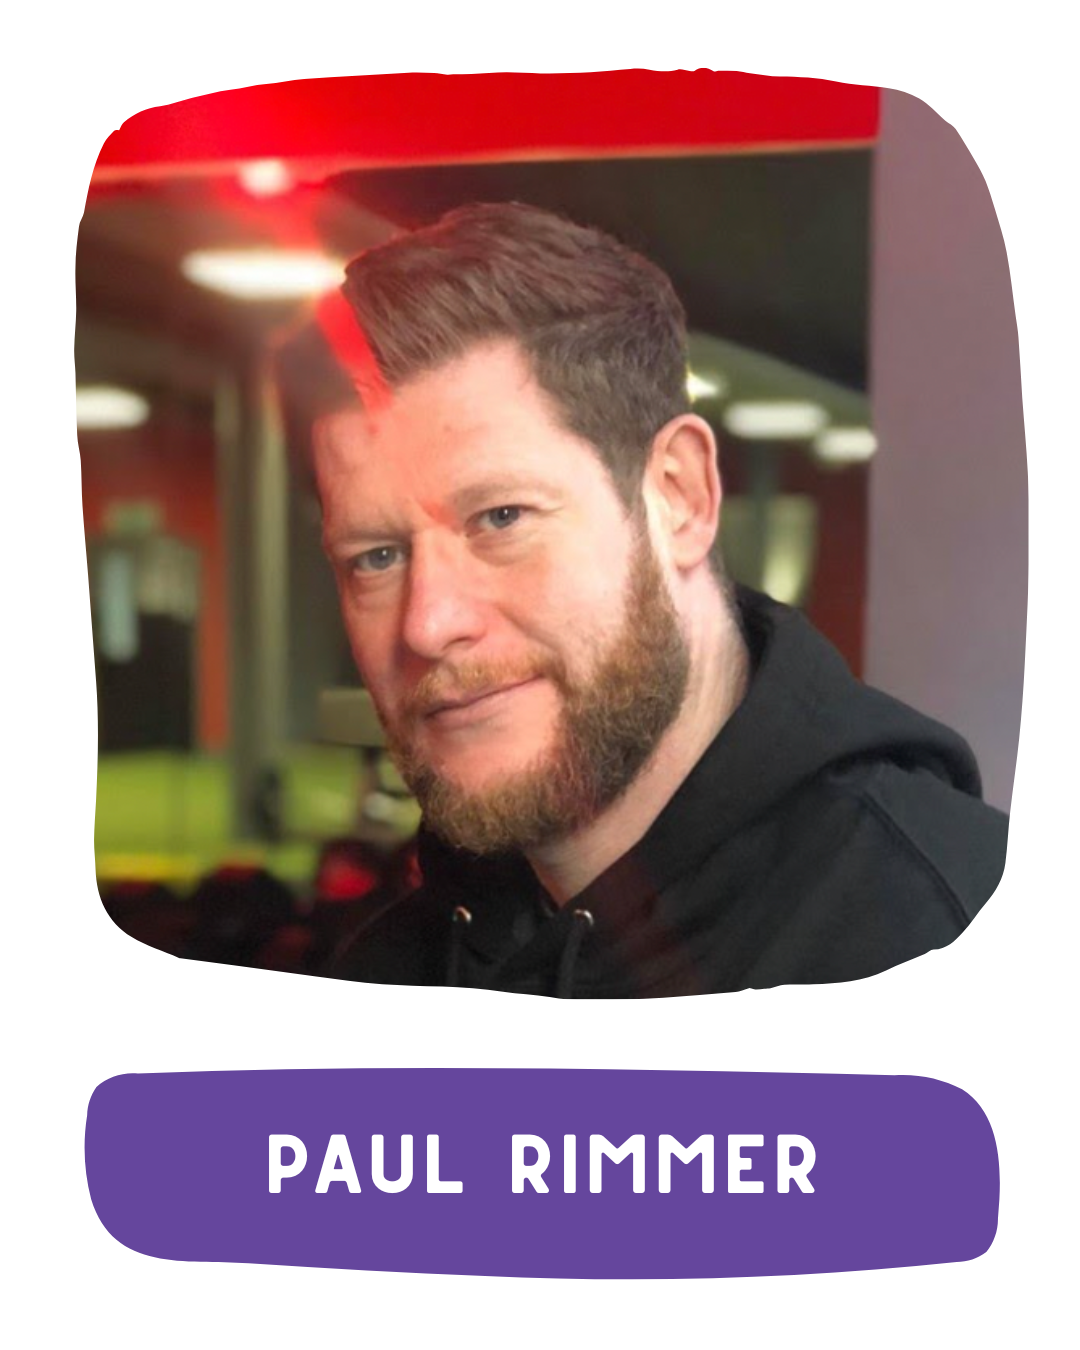 Ph.D. Paul Rimmer